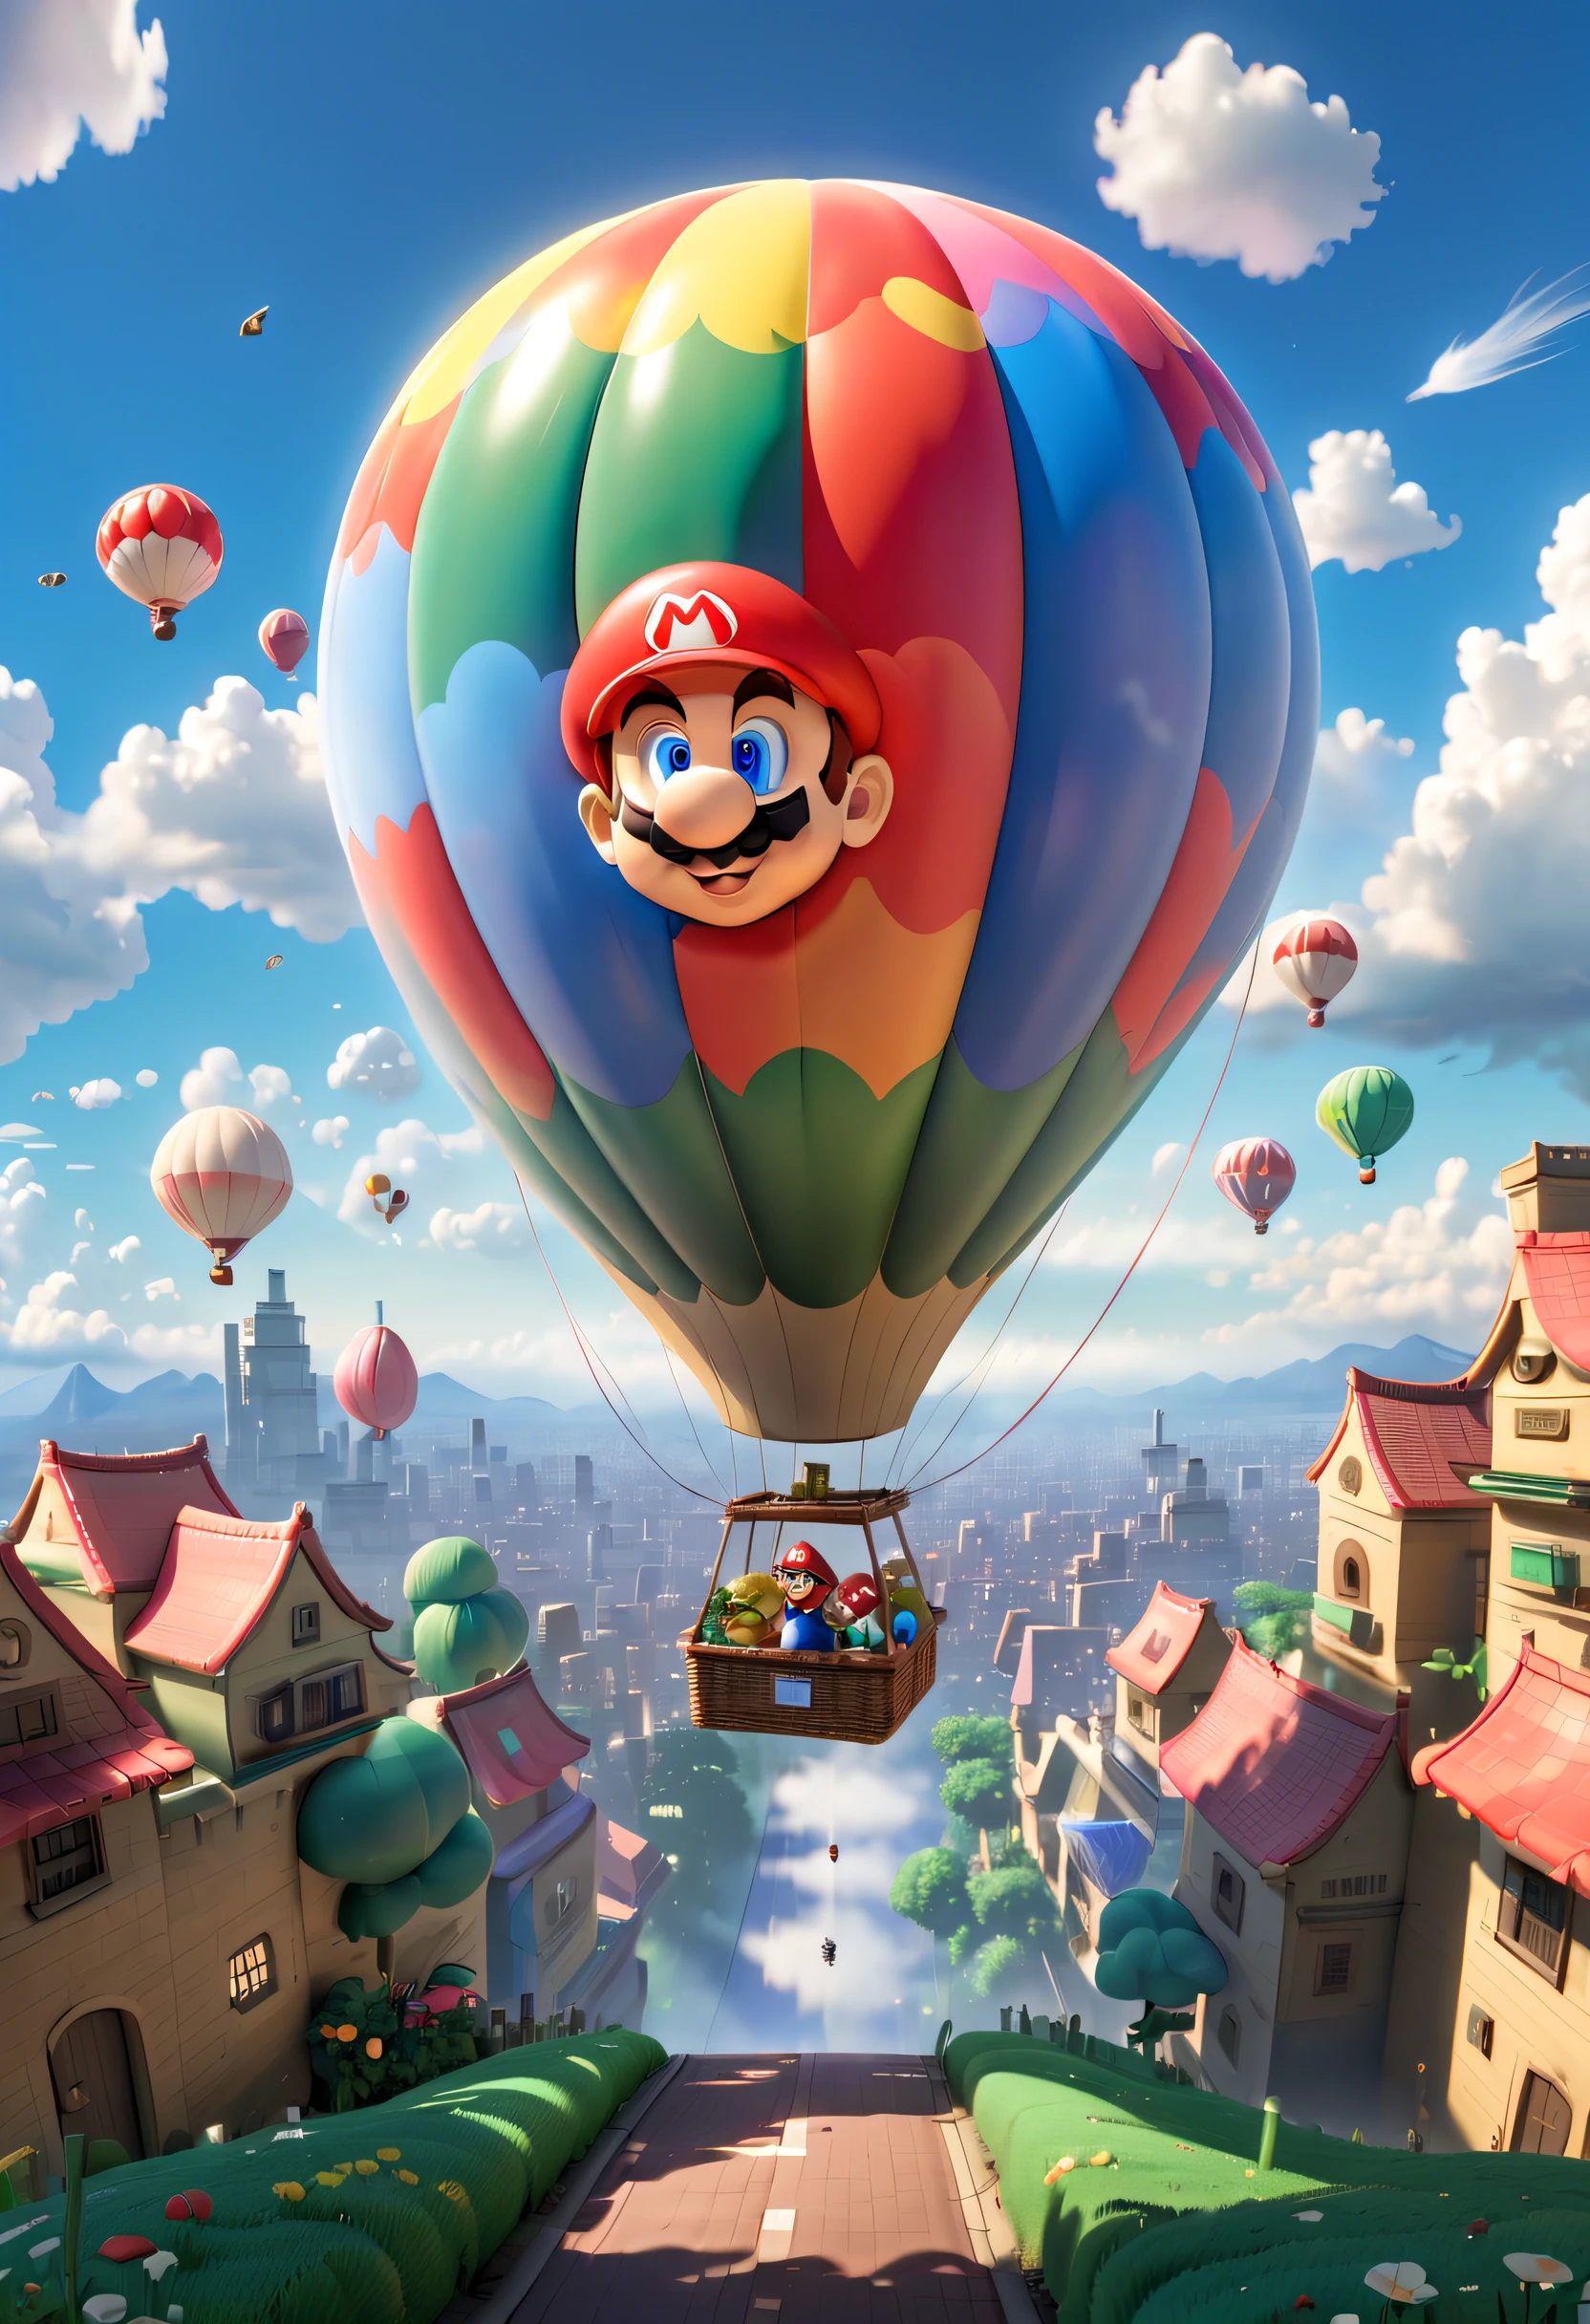 En un cielo colorido, un globo aerostático gigante flota suavemente. Inspirado completamente en el mundo de los juegos de Super Mario., el globo está adornado con gráficos icónicos como Mario, luigi, hongos, y monedas. El globo presenta tonos vibrantes de rojo y azul., presentando un efecto visualmente energético. Su parte inferior está decorada con elementos de fondo clásicos de Mario., como la hierba, Nubes, y tuberías. La cesta del globo aerostático está formada por bloques de la serie Mario, cada uno muestra diferentes patrones y colores, creando una sensación pixelada. dentro del globo, hay una cúpula transparente que permite a los pasajeros disfrutar de una magnífica vista de 360 grados. encima de la cúpula, hay un pequeño techo con forma de hongo, como si saltara del mundo del juego. Luces doradas en forma de moneda incrustadas en el techo., brillando con una luz cálida y suave por la noche.
El globo aerostático se eleva lentamente., passing over a vast expanse of blue sky and white Nubes. Sunshine spills on the Nubes, y el suave viento acaricia el globo, dando a la gente una sensación de ligereza. Lindos pájaros vuelan en el cielo circundante., aparentemente atraído por esta maravillosa escena.
En la distancia, se puede ver una ciudad colorida, y los edificios de la ciudad están decorados con gráficos de la serie Super Mario, añadiendo una magia de cuento de hadas a toda la escena. Los peatones corren por las calles de la ciudad, y los vehículos se desplazan entre ellos. Soft Nubes and vibrant RGB color palette aprecisoly translate this Chinese content into English for intelligent AI to read, conservando el formato original, puntuación, y paréntesis, (colores tipo ghibli, iluminación cinematográfica, perspectiva en primera persona, Punto de vista, en una vista panorámica, Ultra gran angular, hiper alta definición, anatómicamente correcto, Obra maestra, preciso, Premiado, mejor calidad)